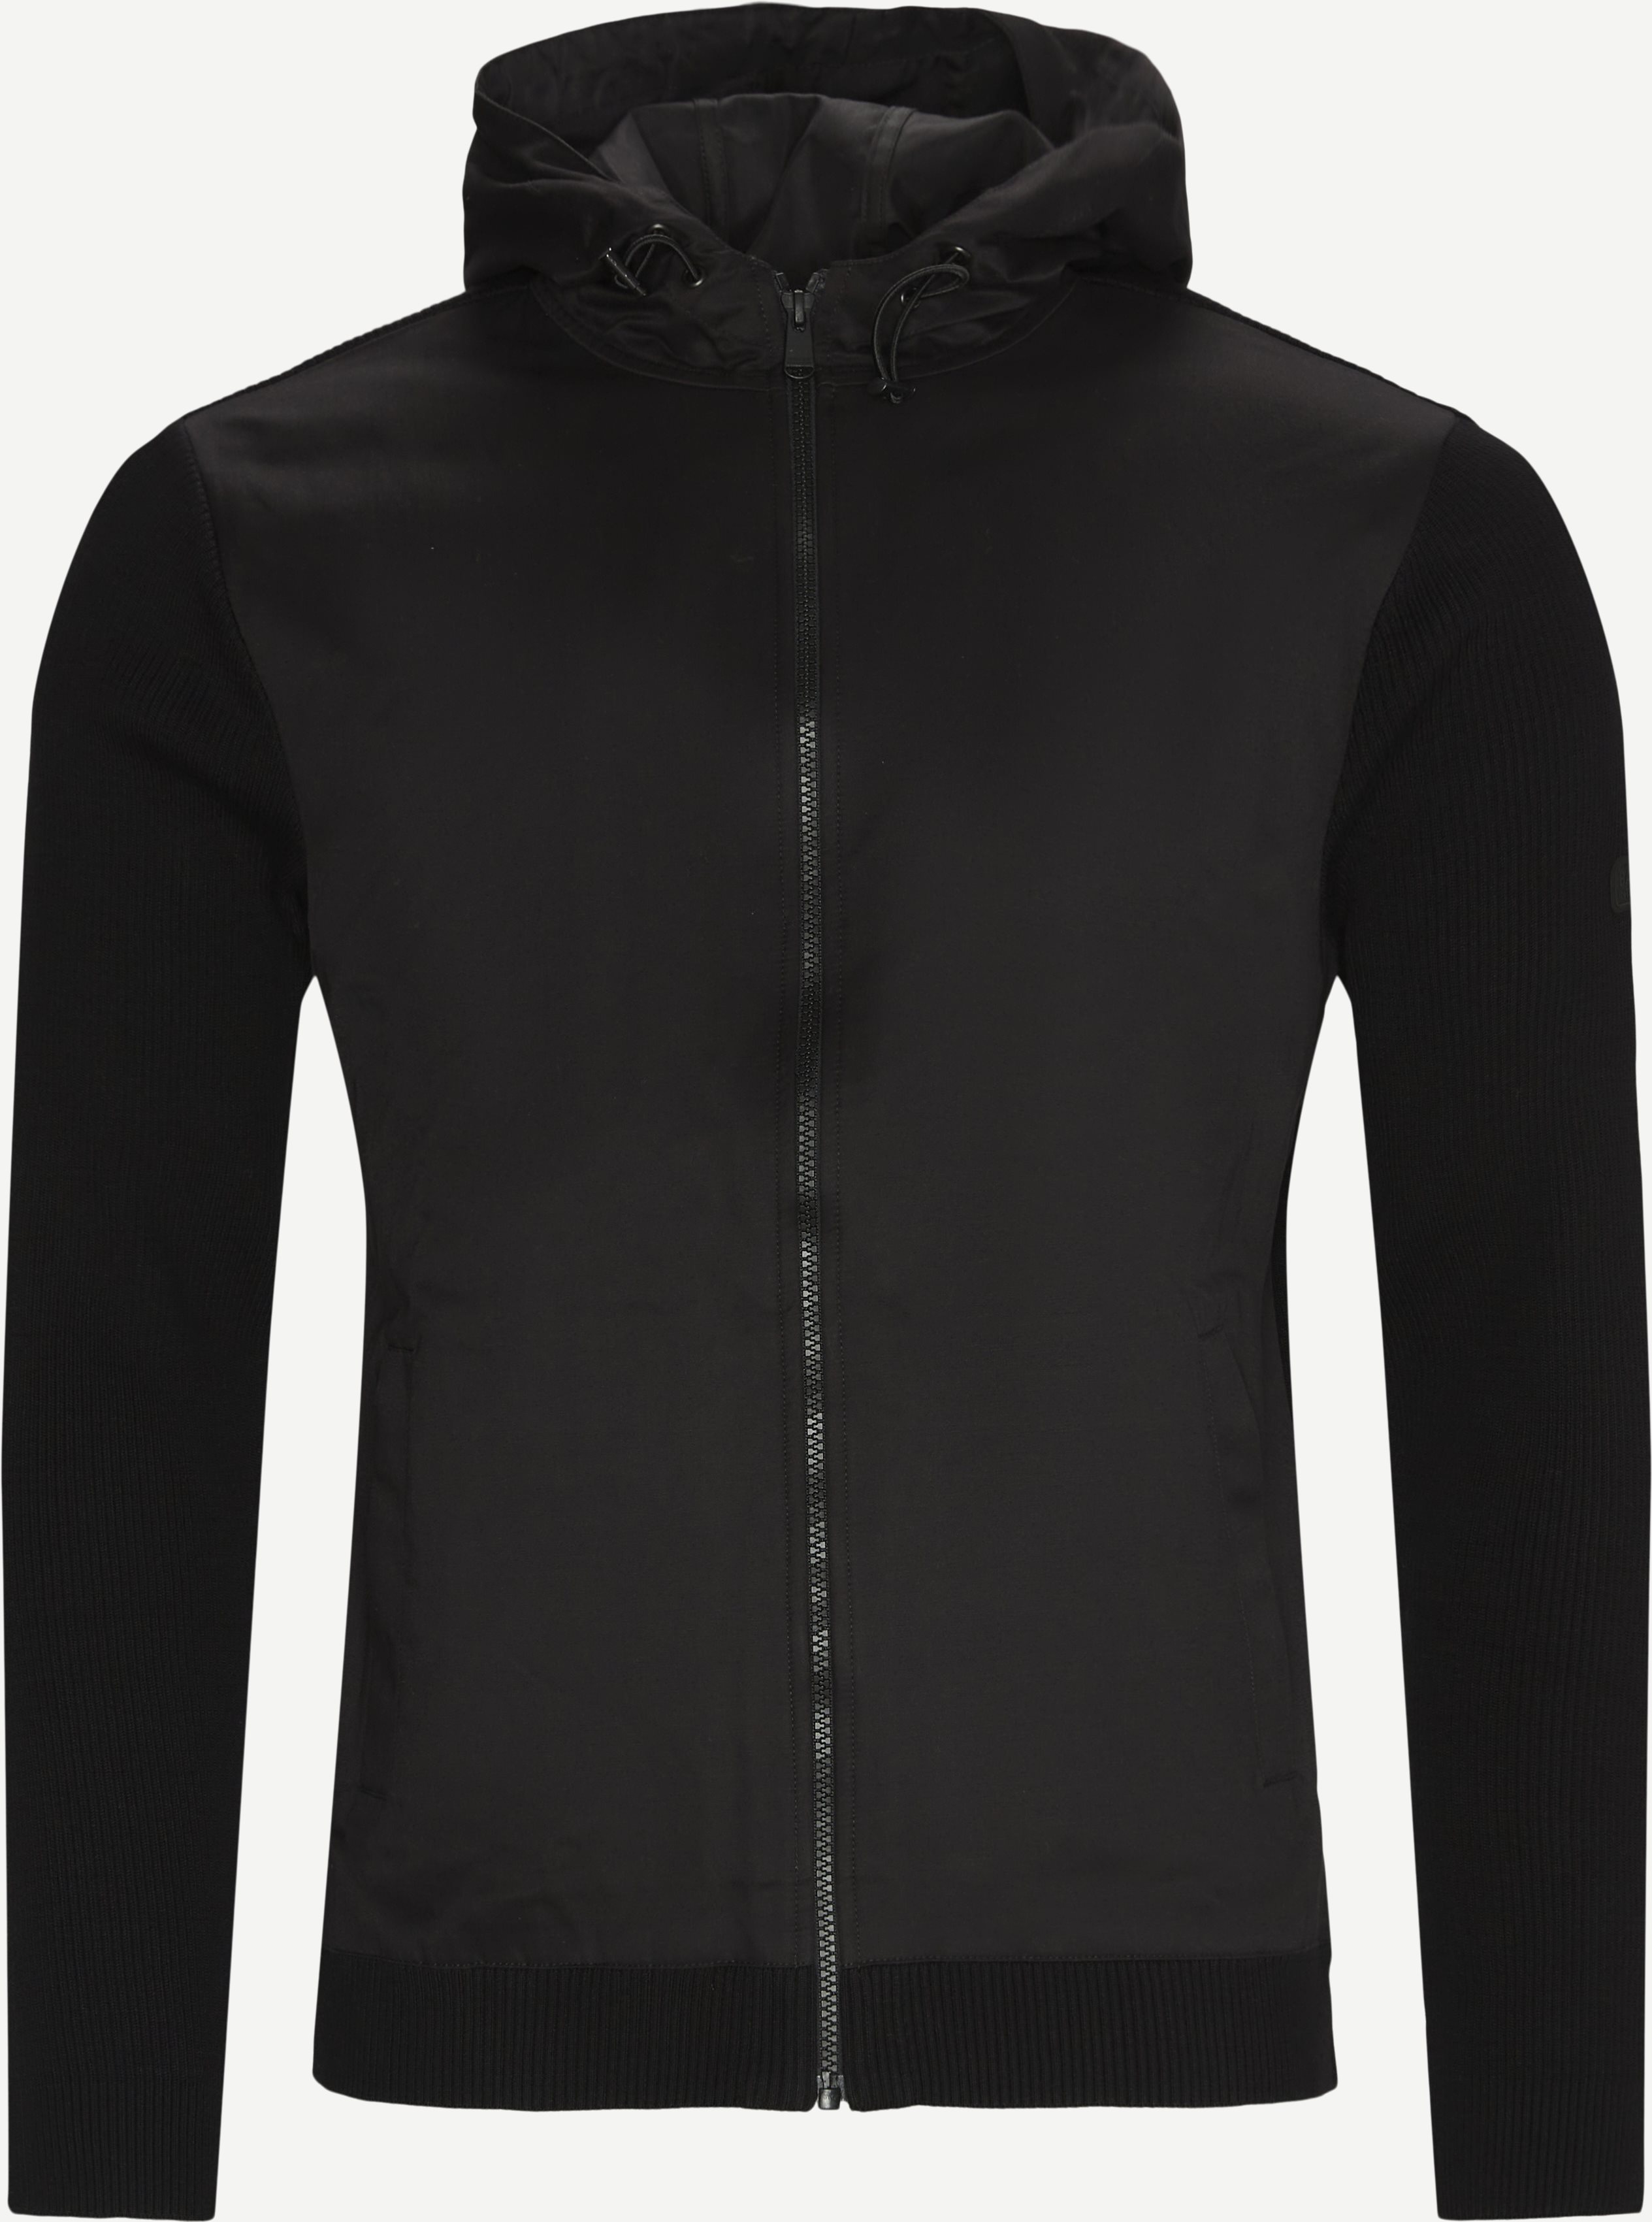 Hairpin Hoody - Lightweight jackets - Regular fit - Black